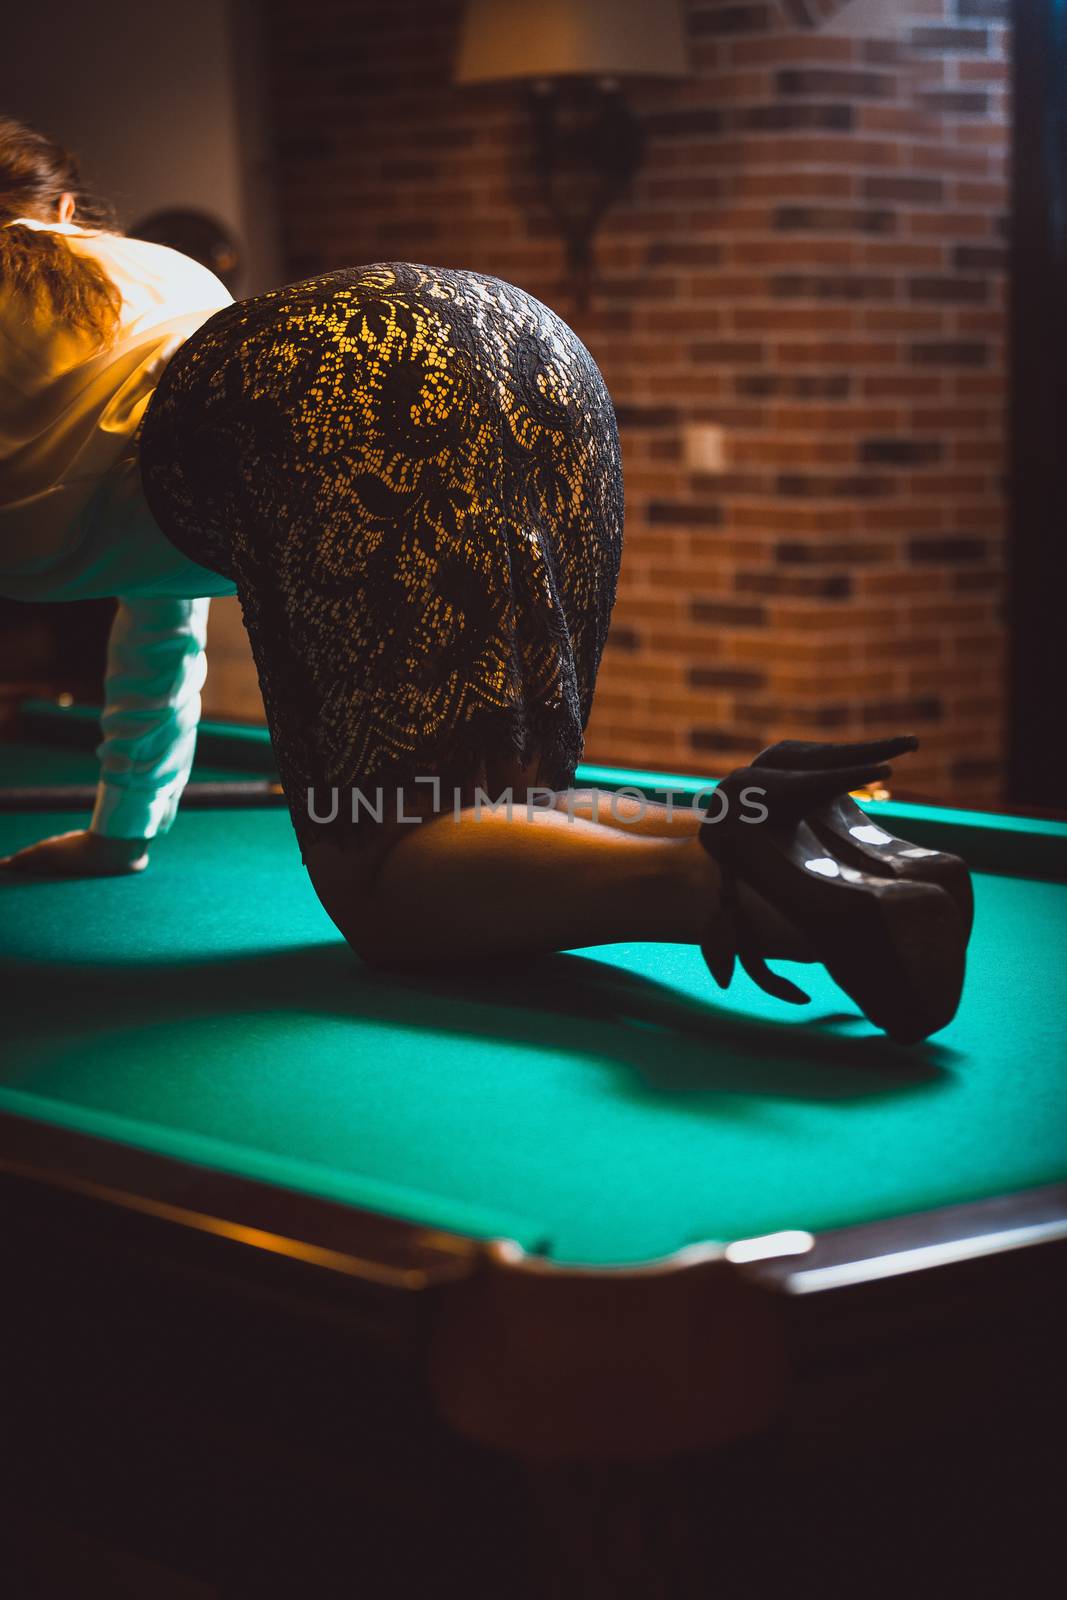 Woman in skirt and stockings kneeling on billiard by Kryzhov